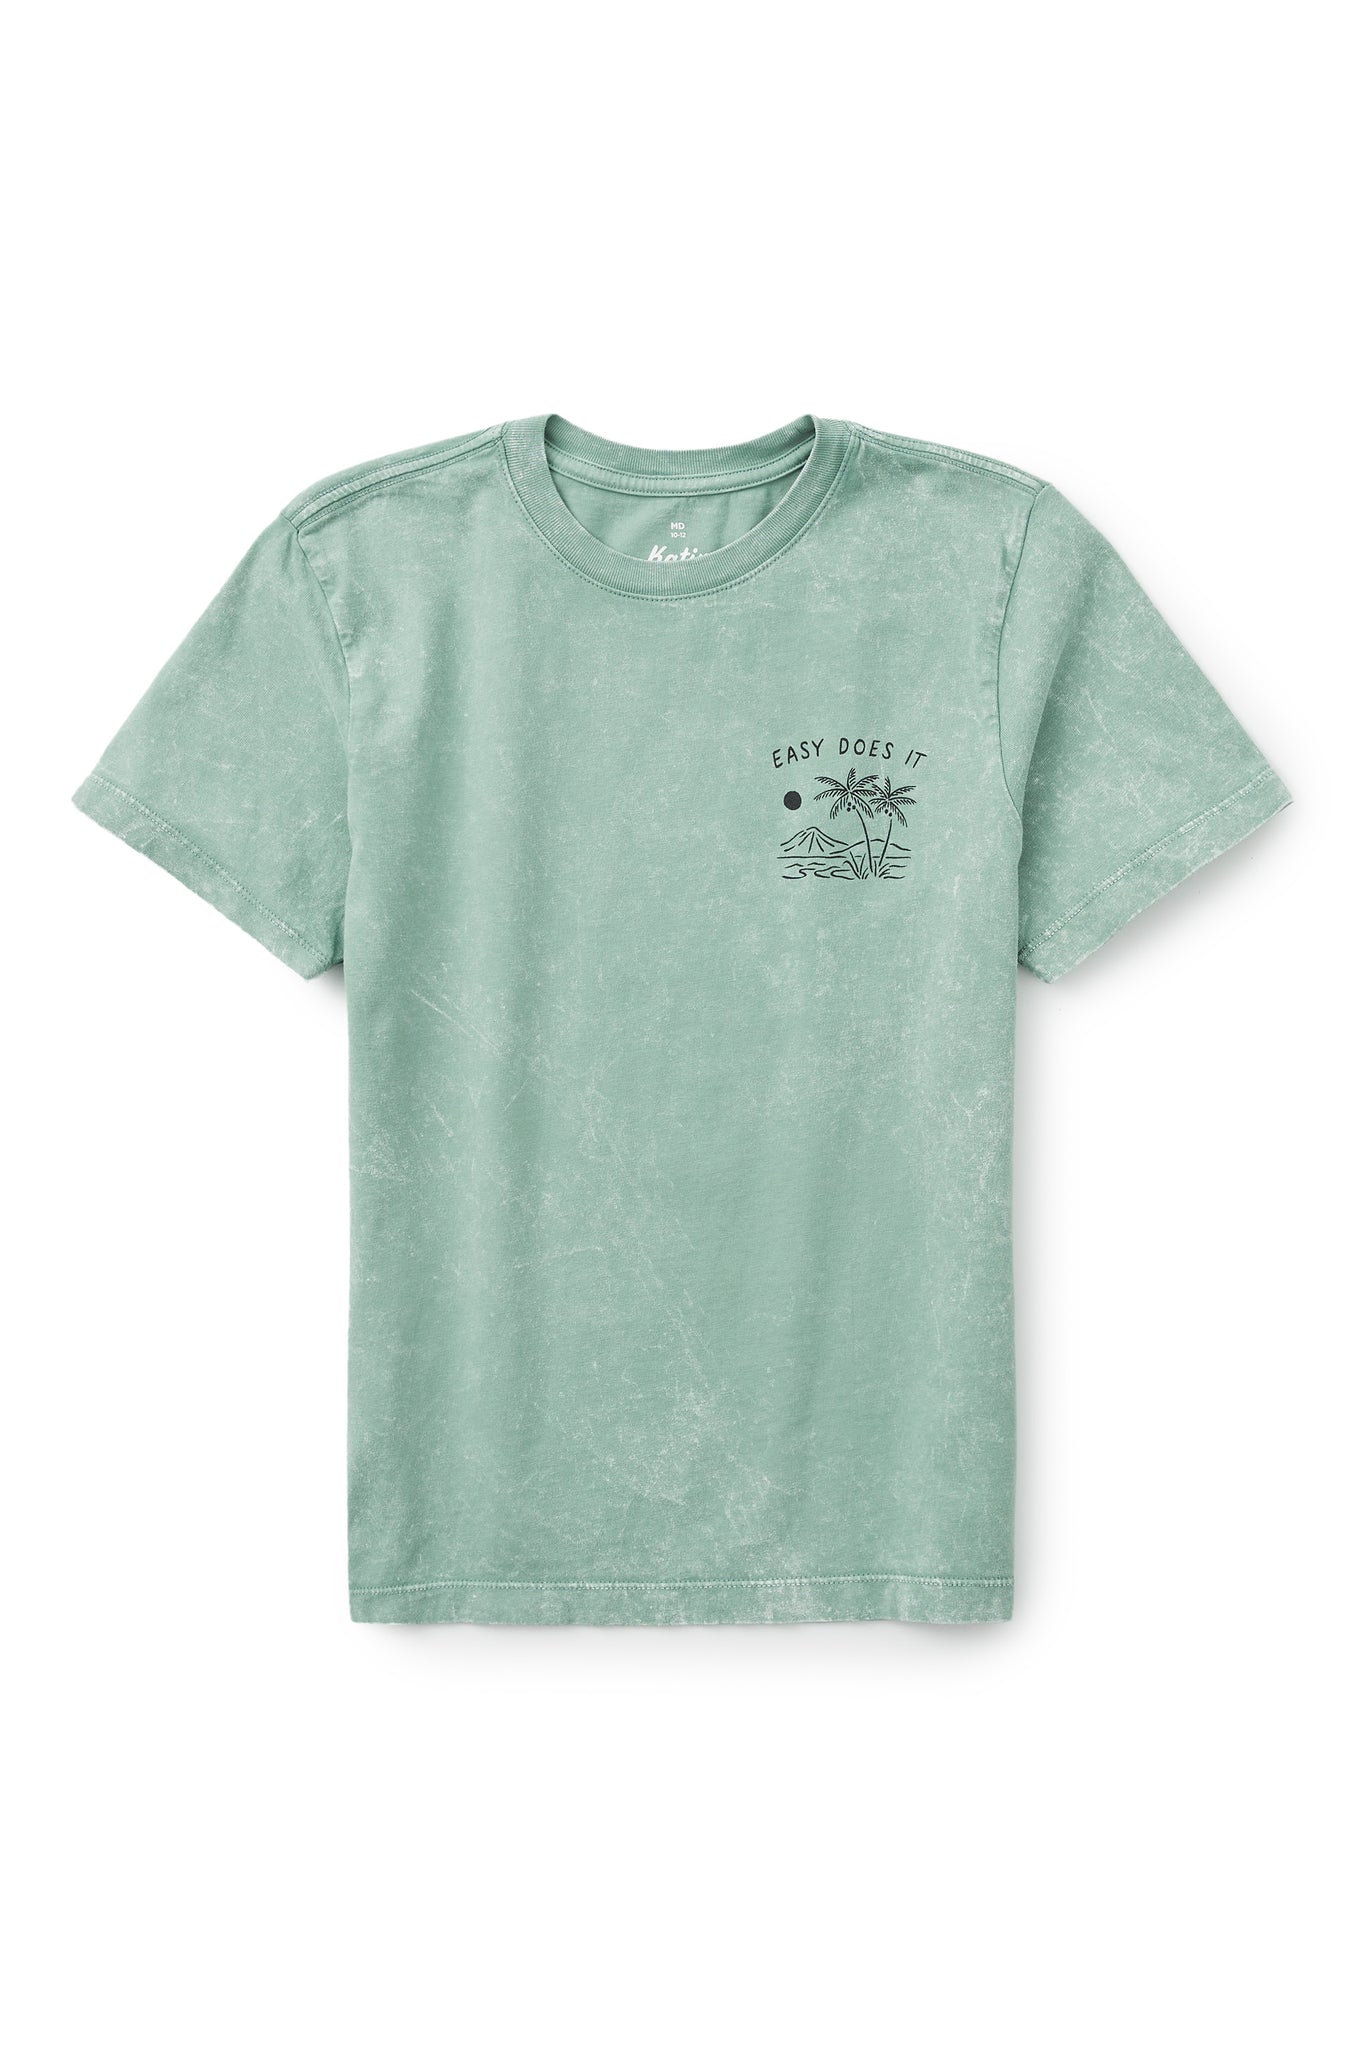 T-shirt Isle Katin - Enfant